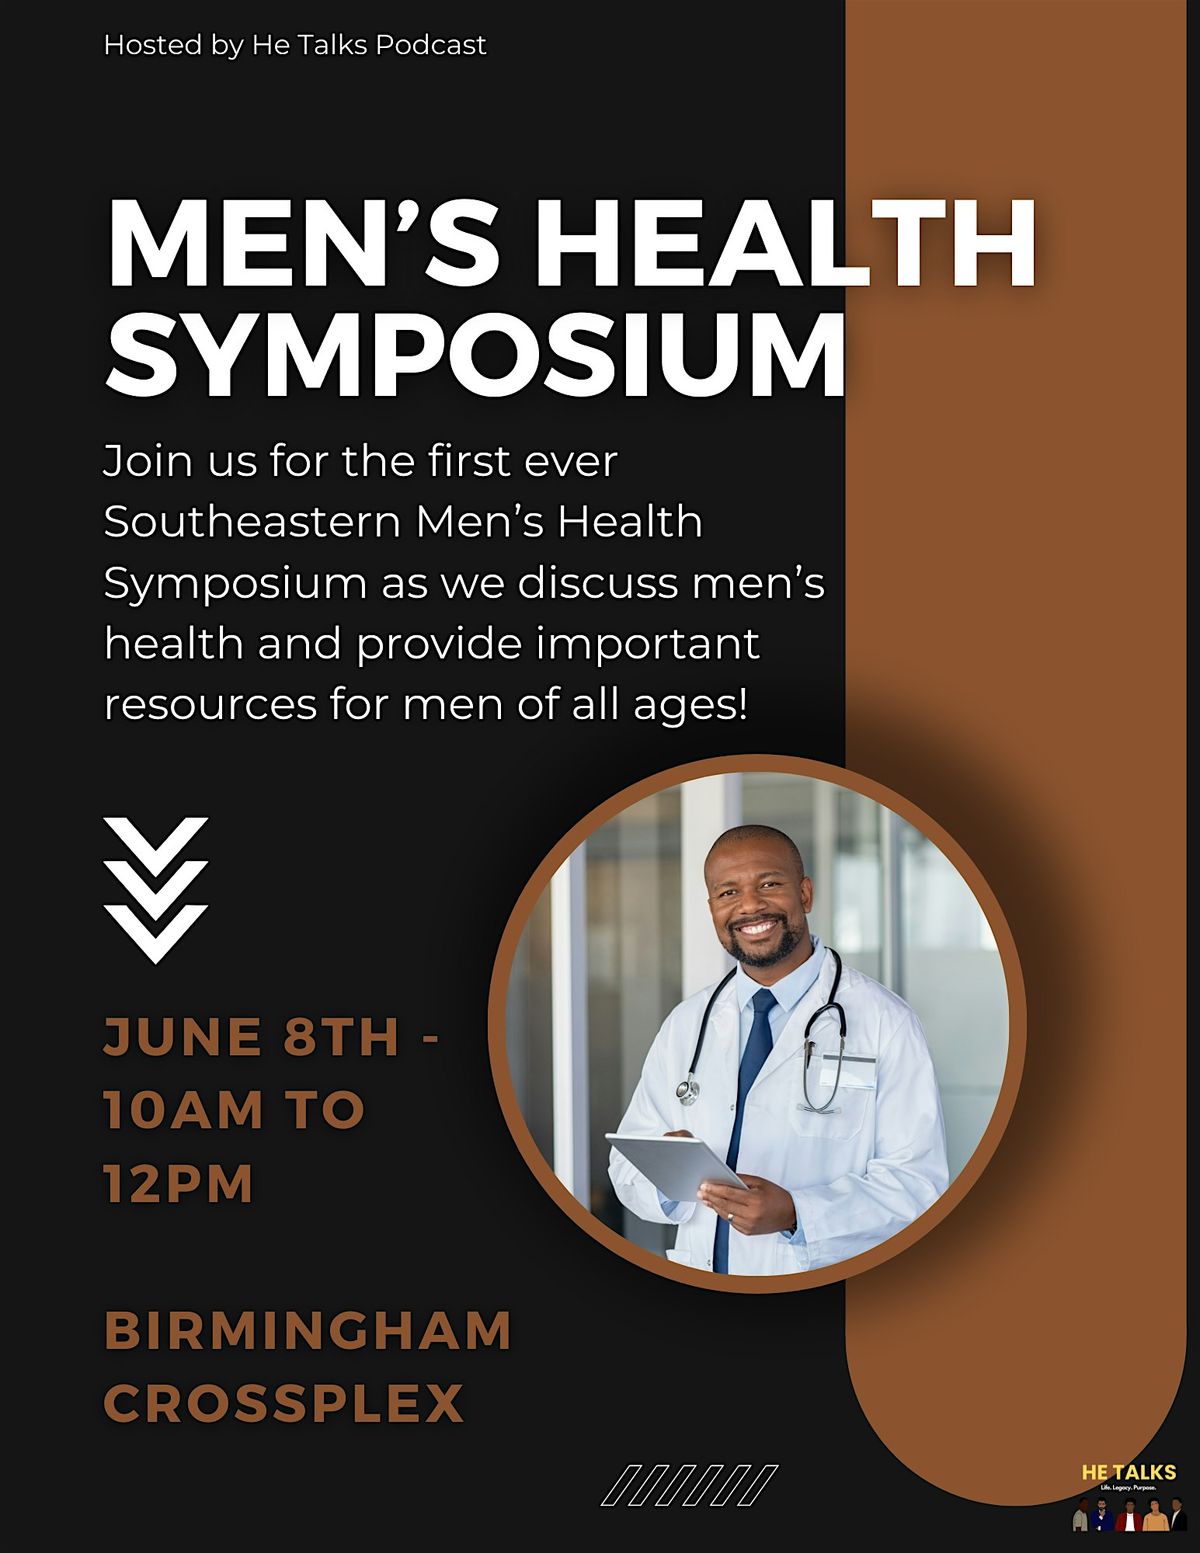 Southeastern Men's Health Symposium